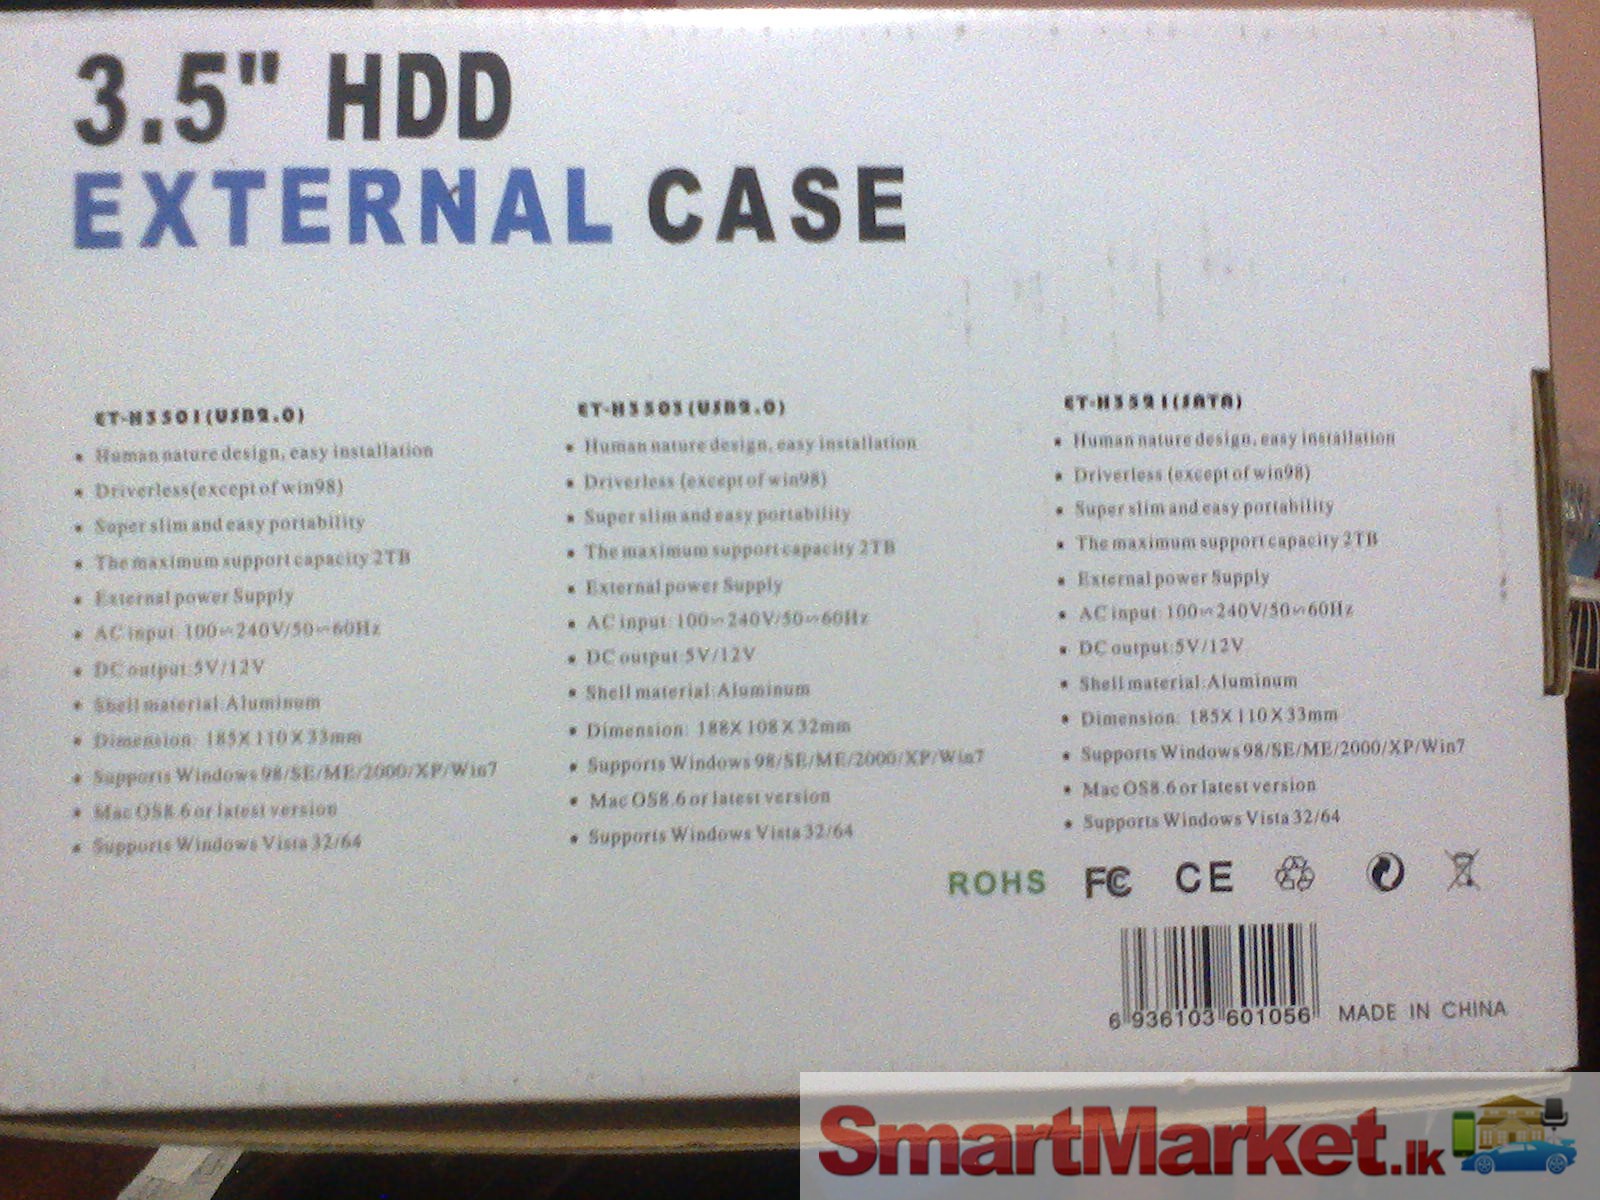 Hard drive external case